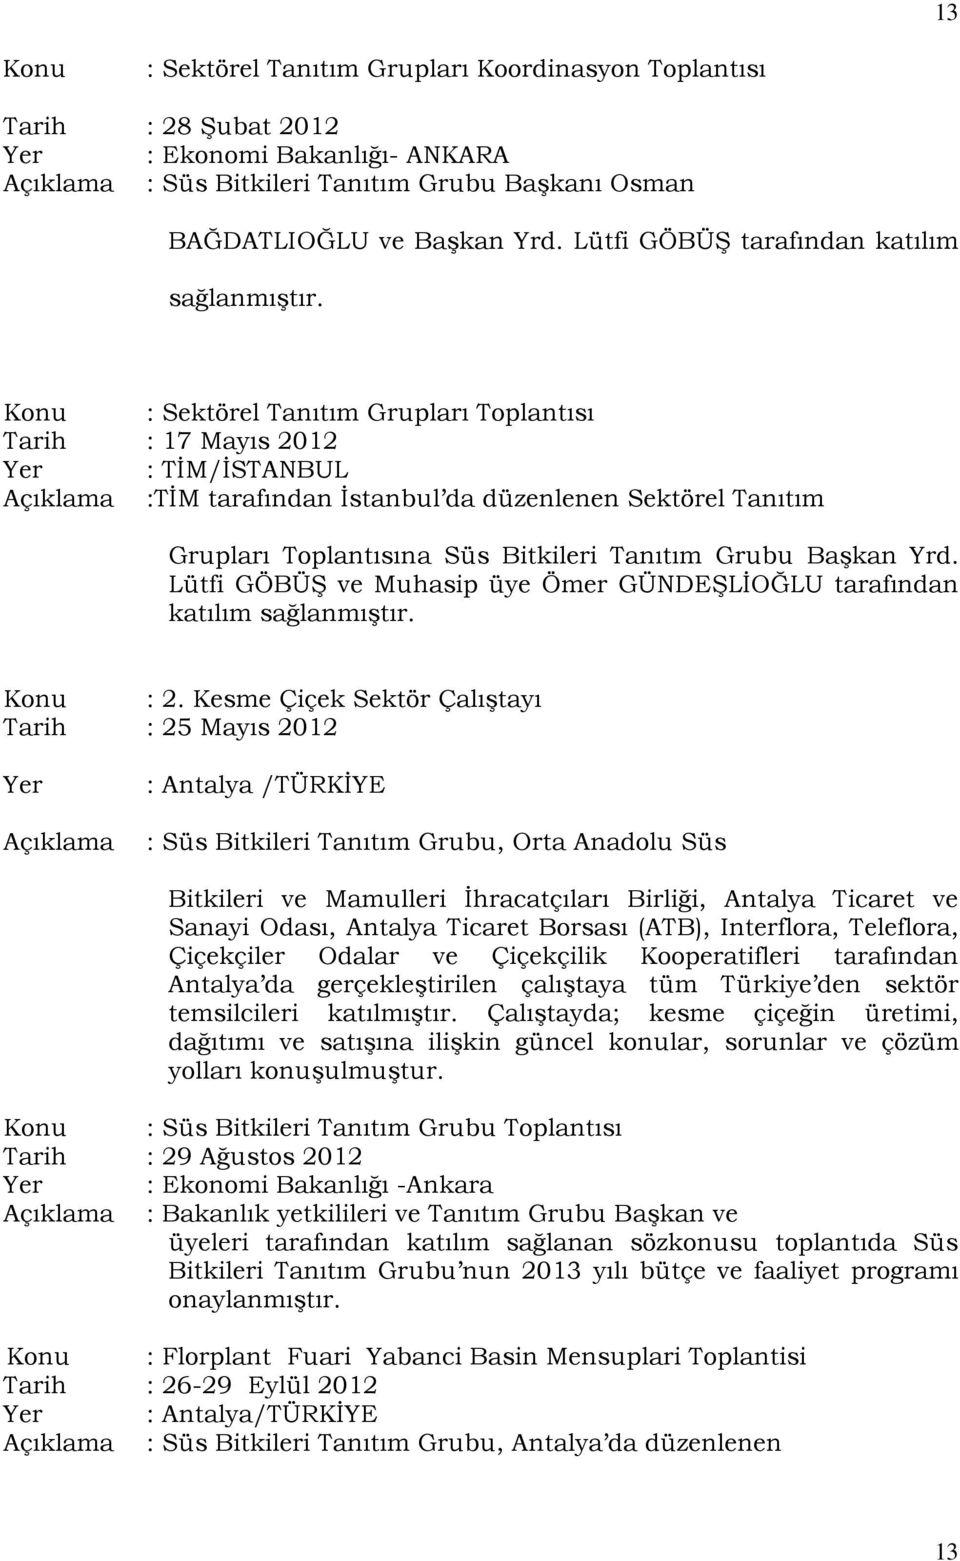 Konu : Sektörel Tanıtım Grupları Toplantısı Tarih : 17 Mayıs 2012 Yer : TİM/İSTANBUL Açıklama :TİM tarafından İstanbul da düzenlenen Sektörel Tanıtım Grupları Toplantısına Süs Bitkileri Tanıtım Grubu